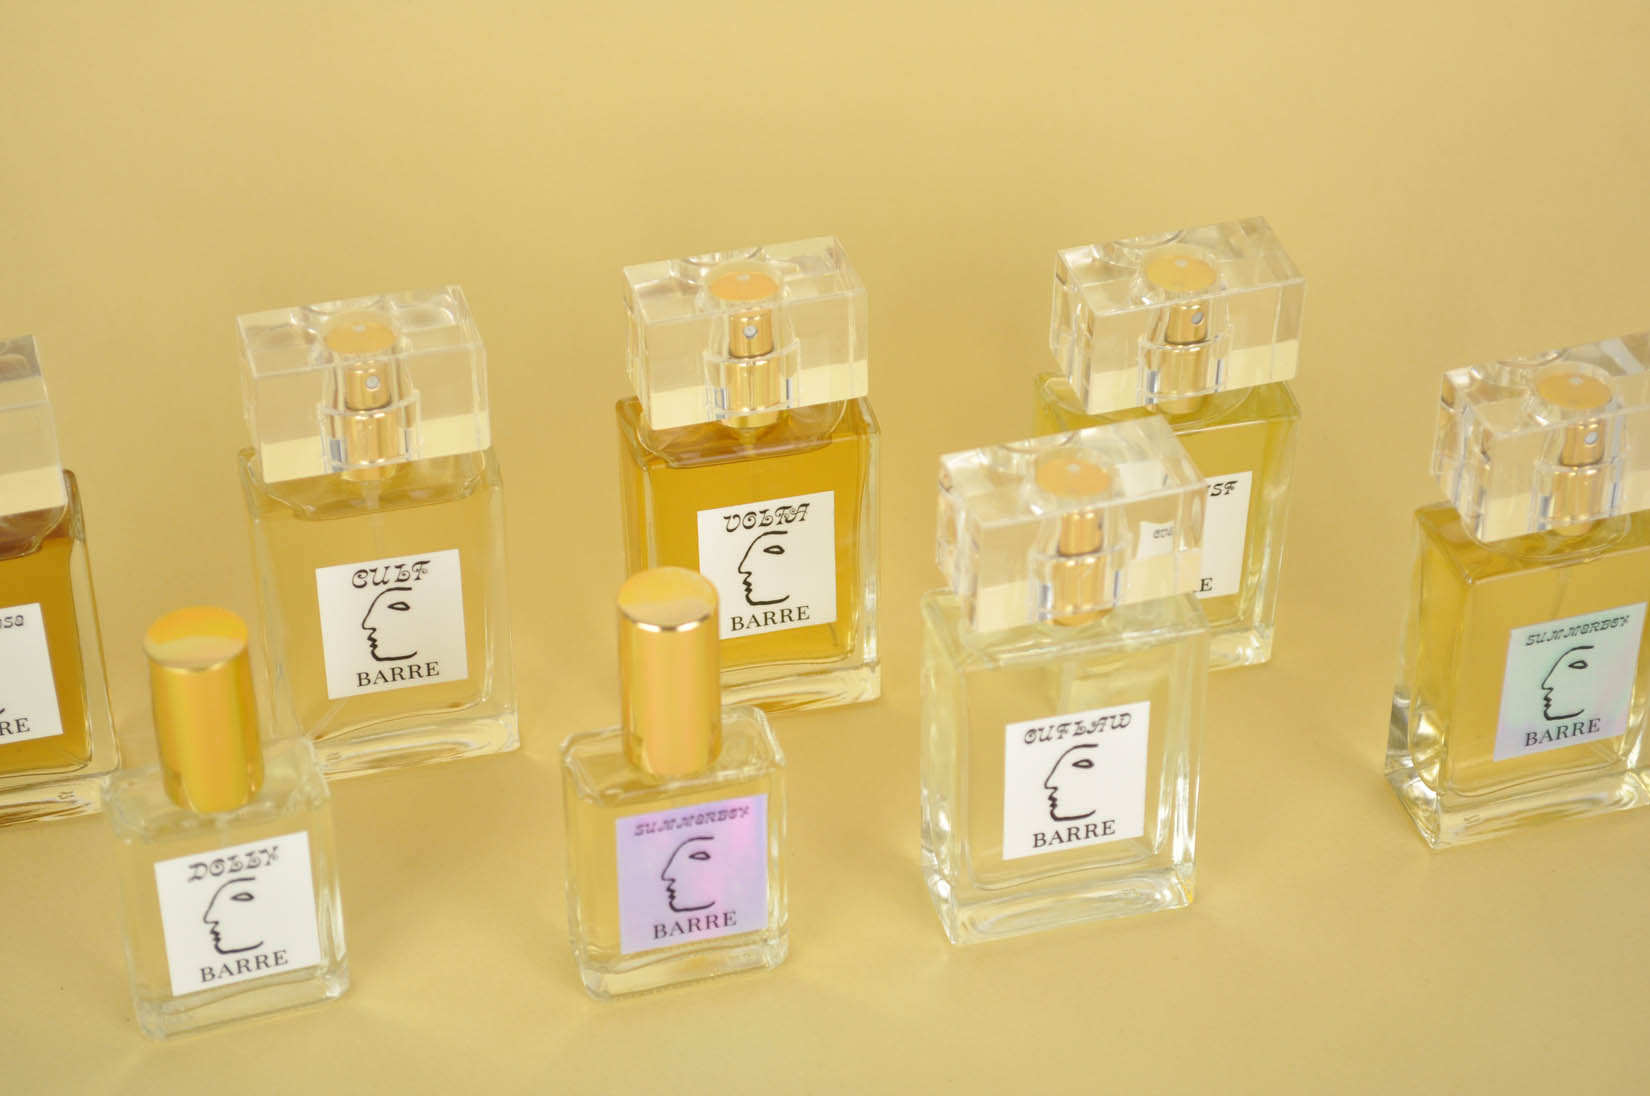 Meet Barre, the Artisanal Perfume Brand From Rural Nova Scotia